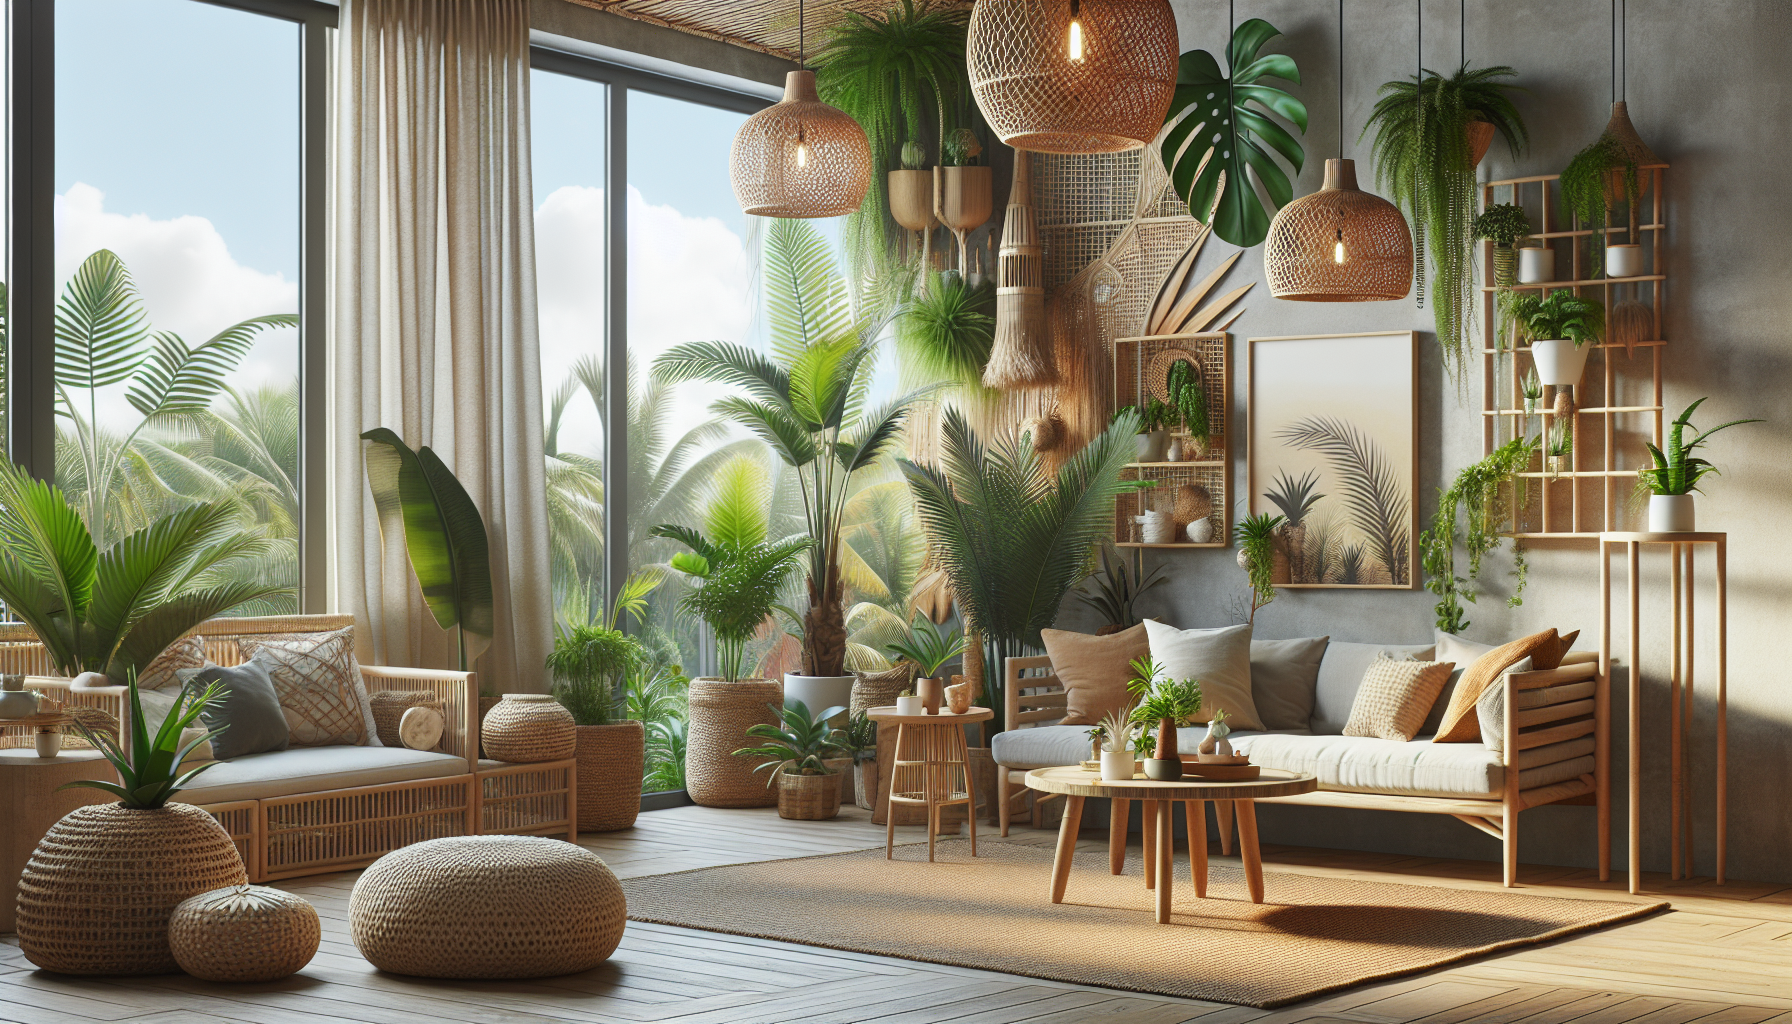 Dicas de decoração tropical para apartamentos pequenos: como criar uma atmosfera tropical com materiais naturais, plantas e móveis confortáveis